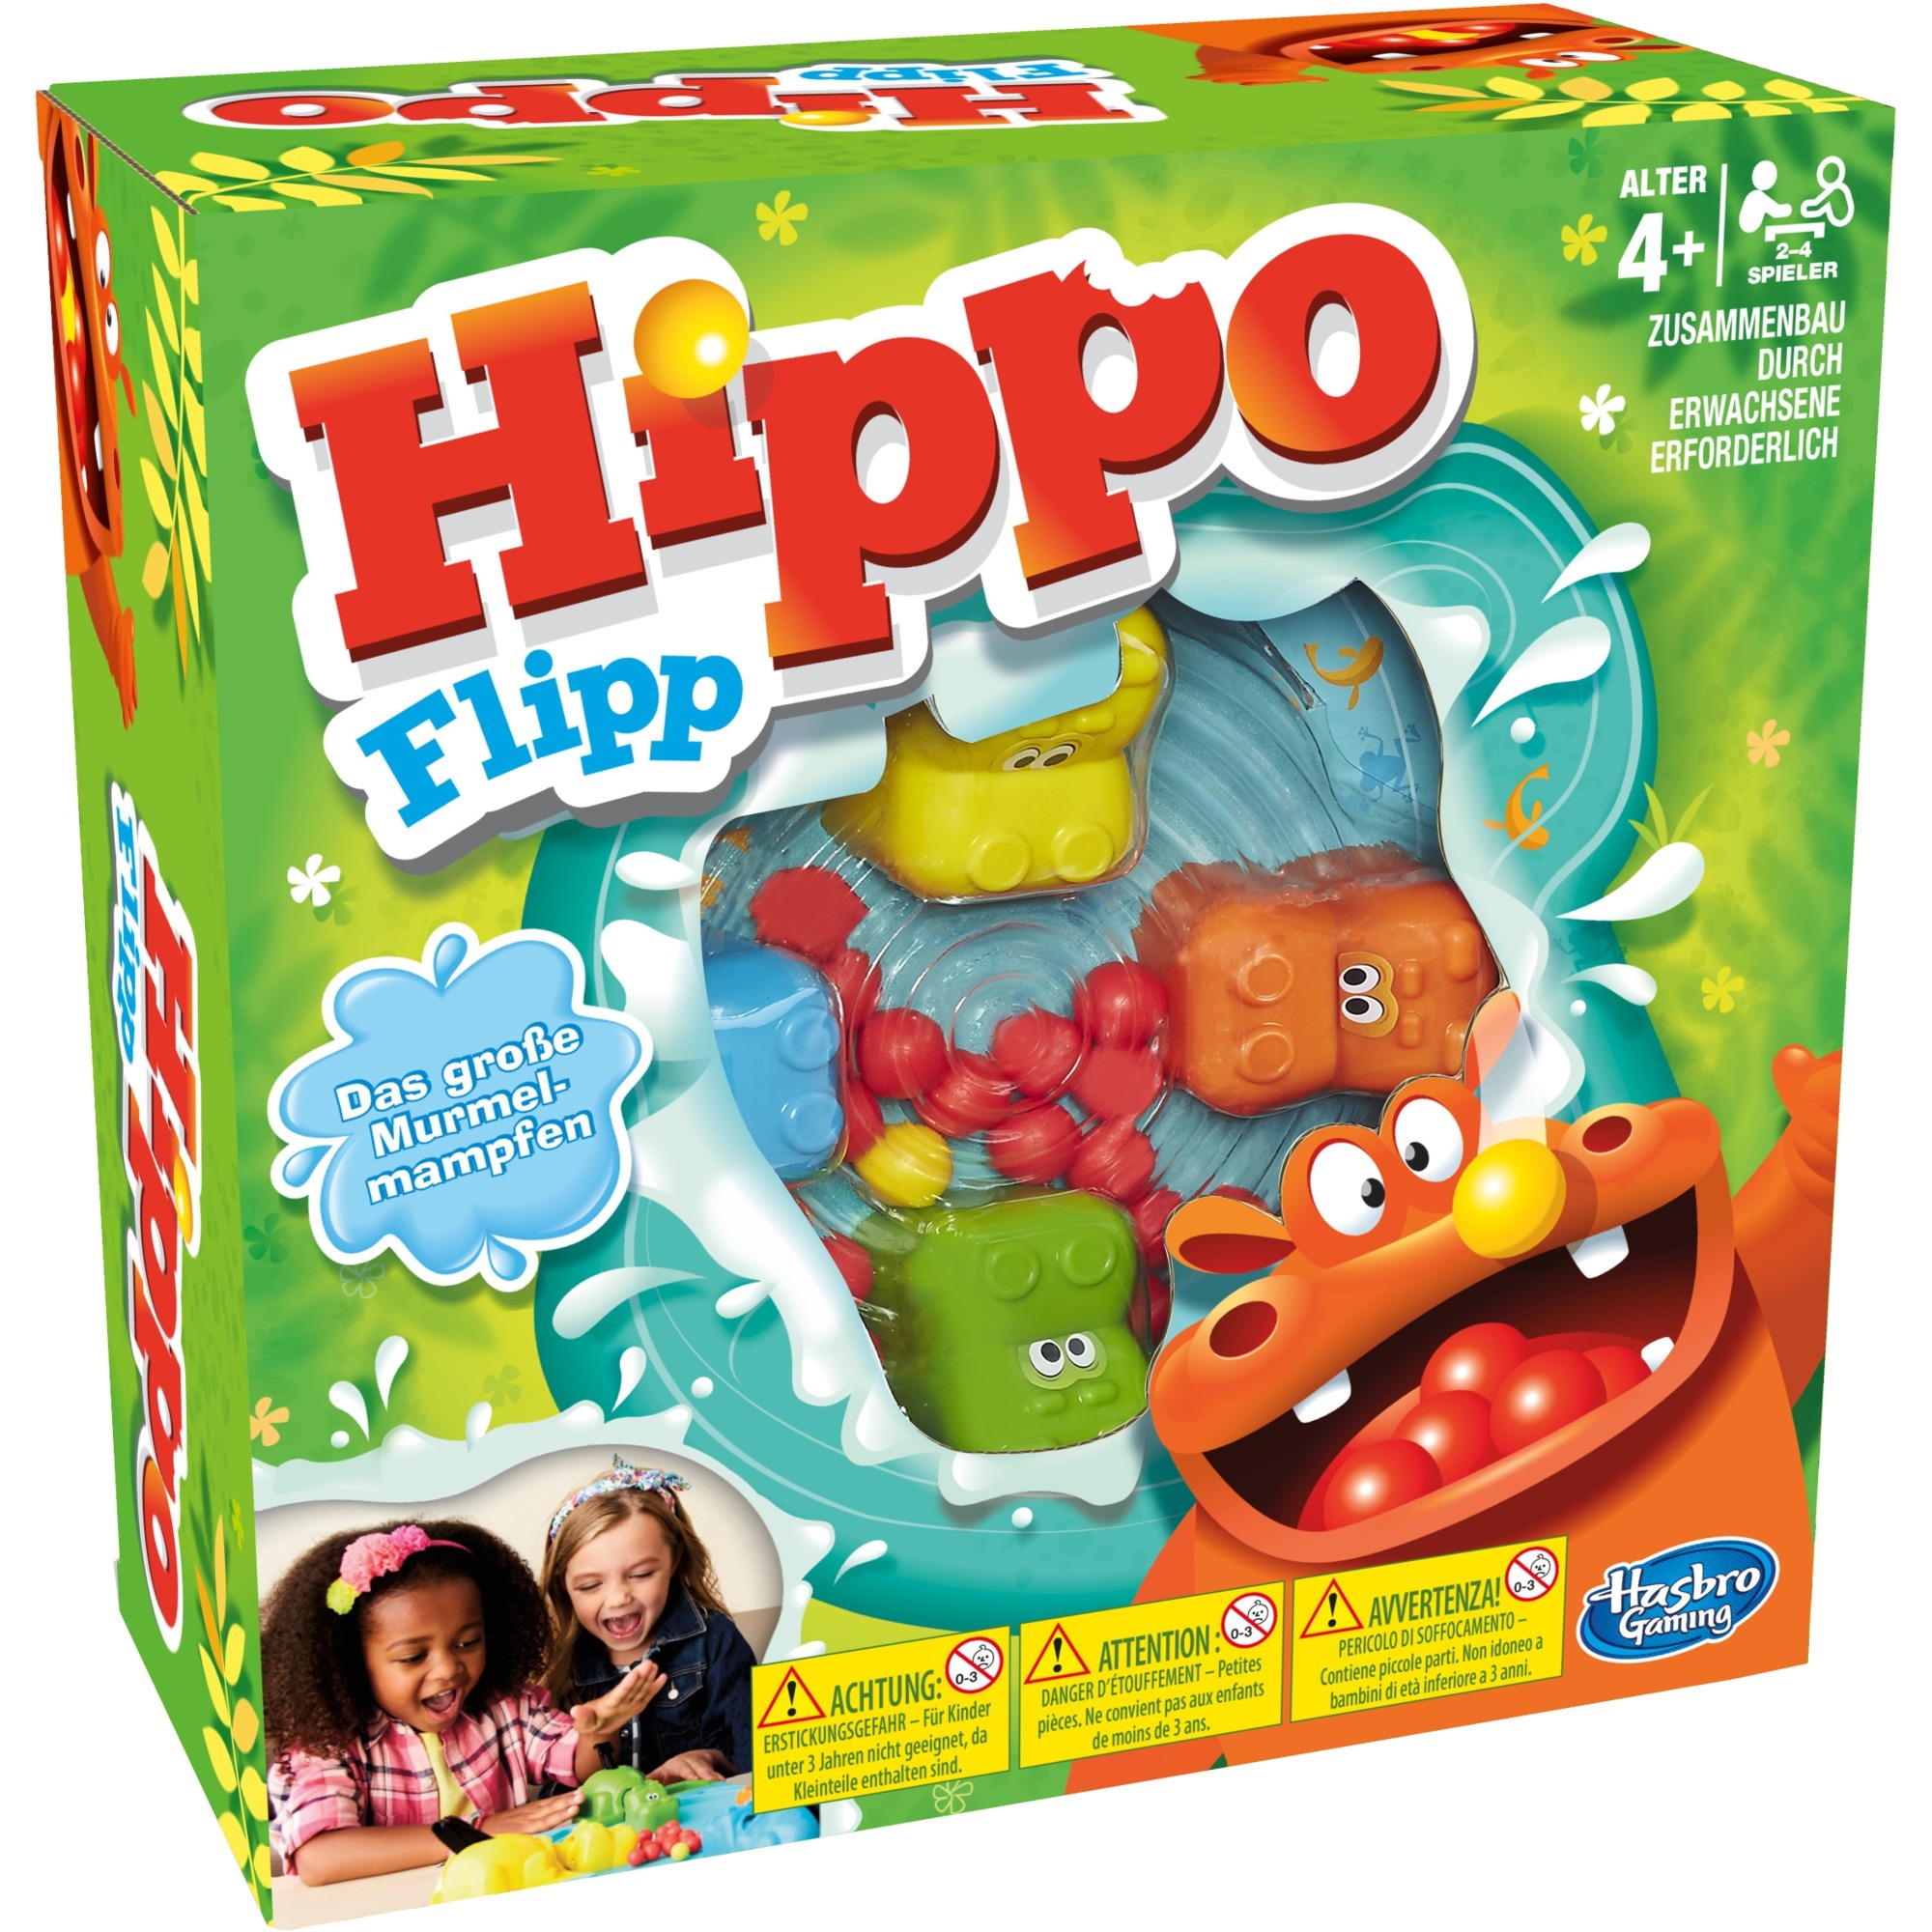 Image of Alternate - Hippo Flipp, Geschicklichkeitsspiel online einkaufen bei Alternate